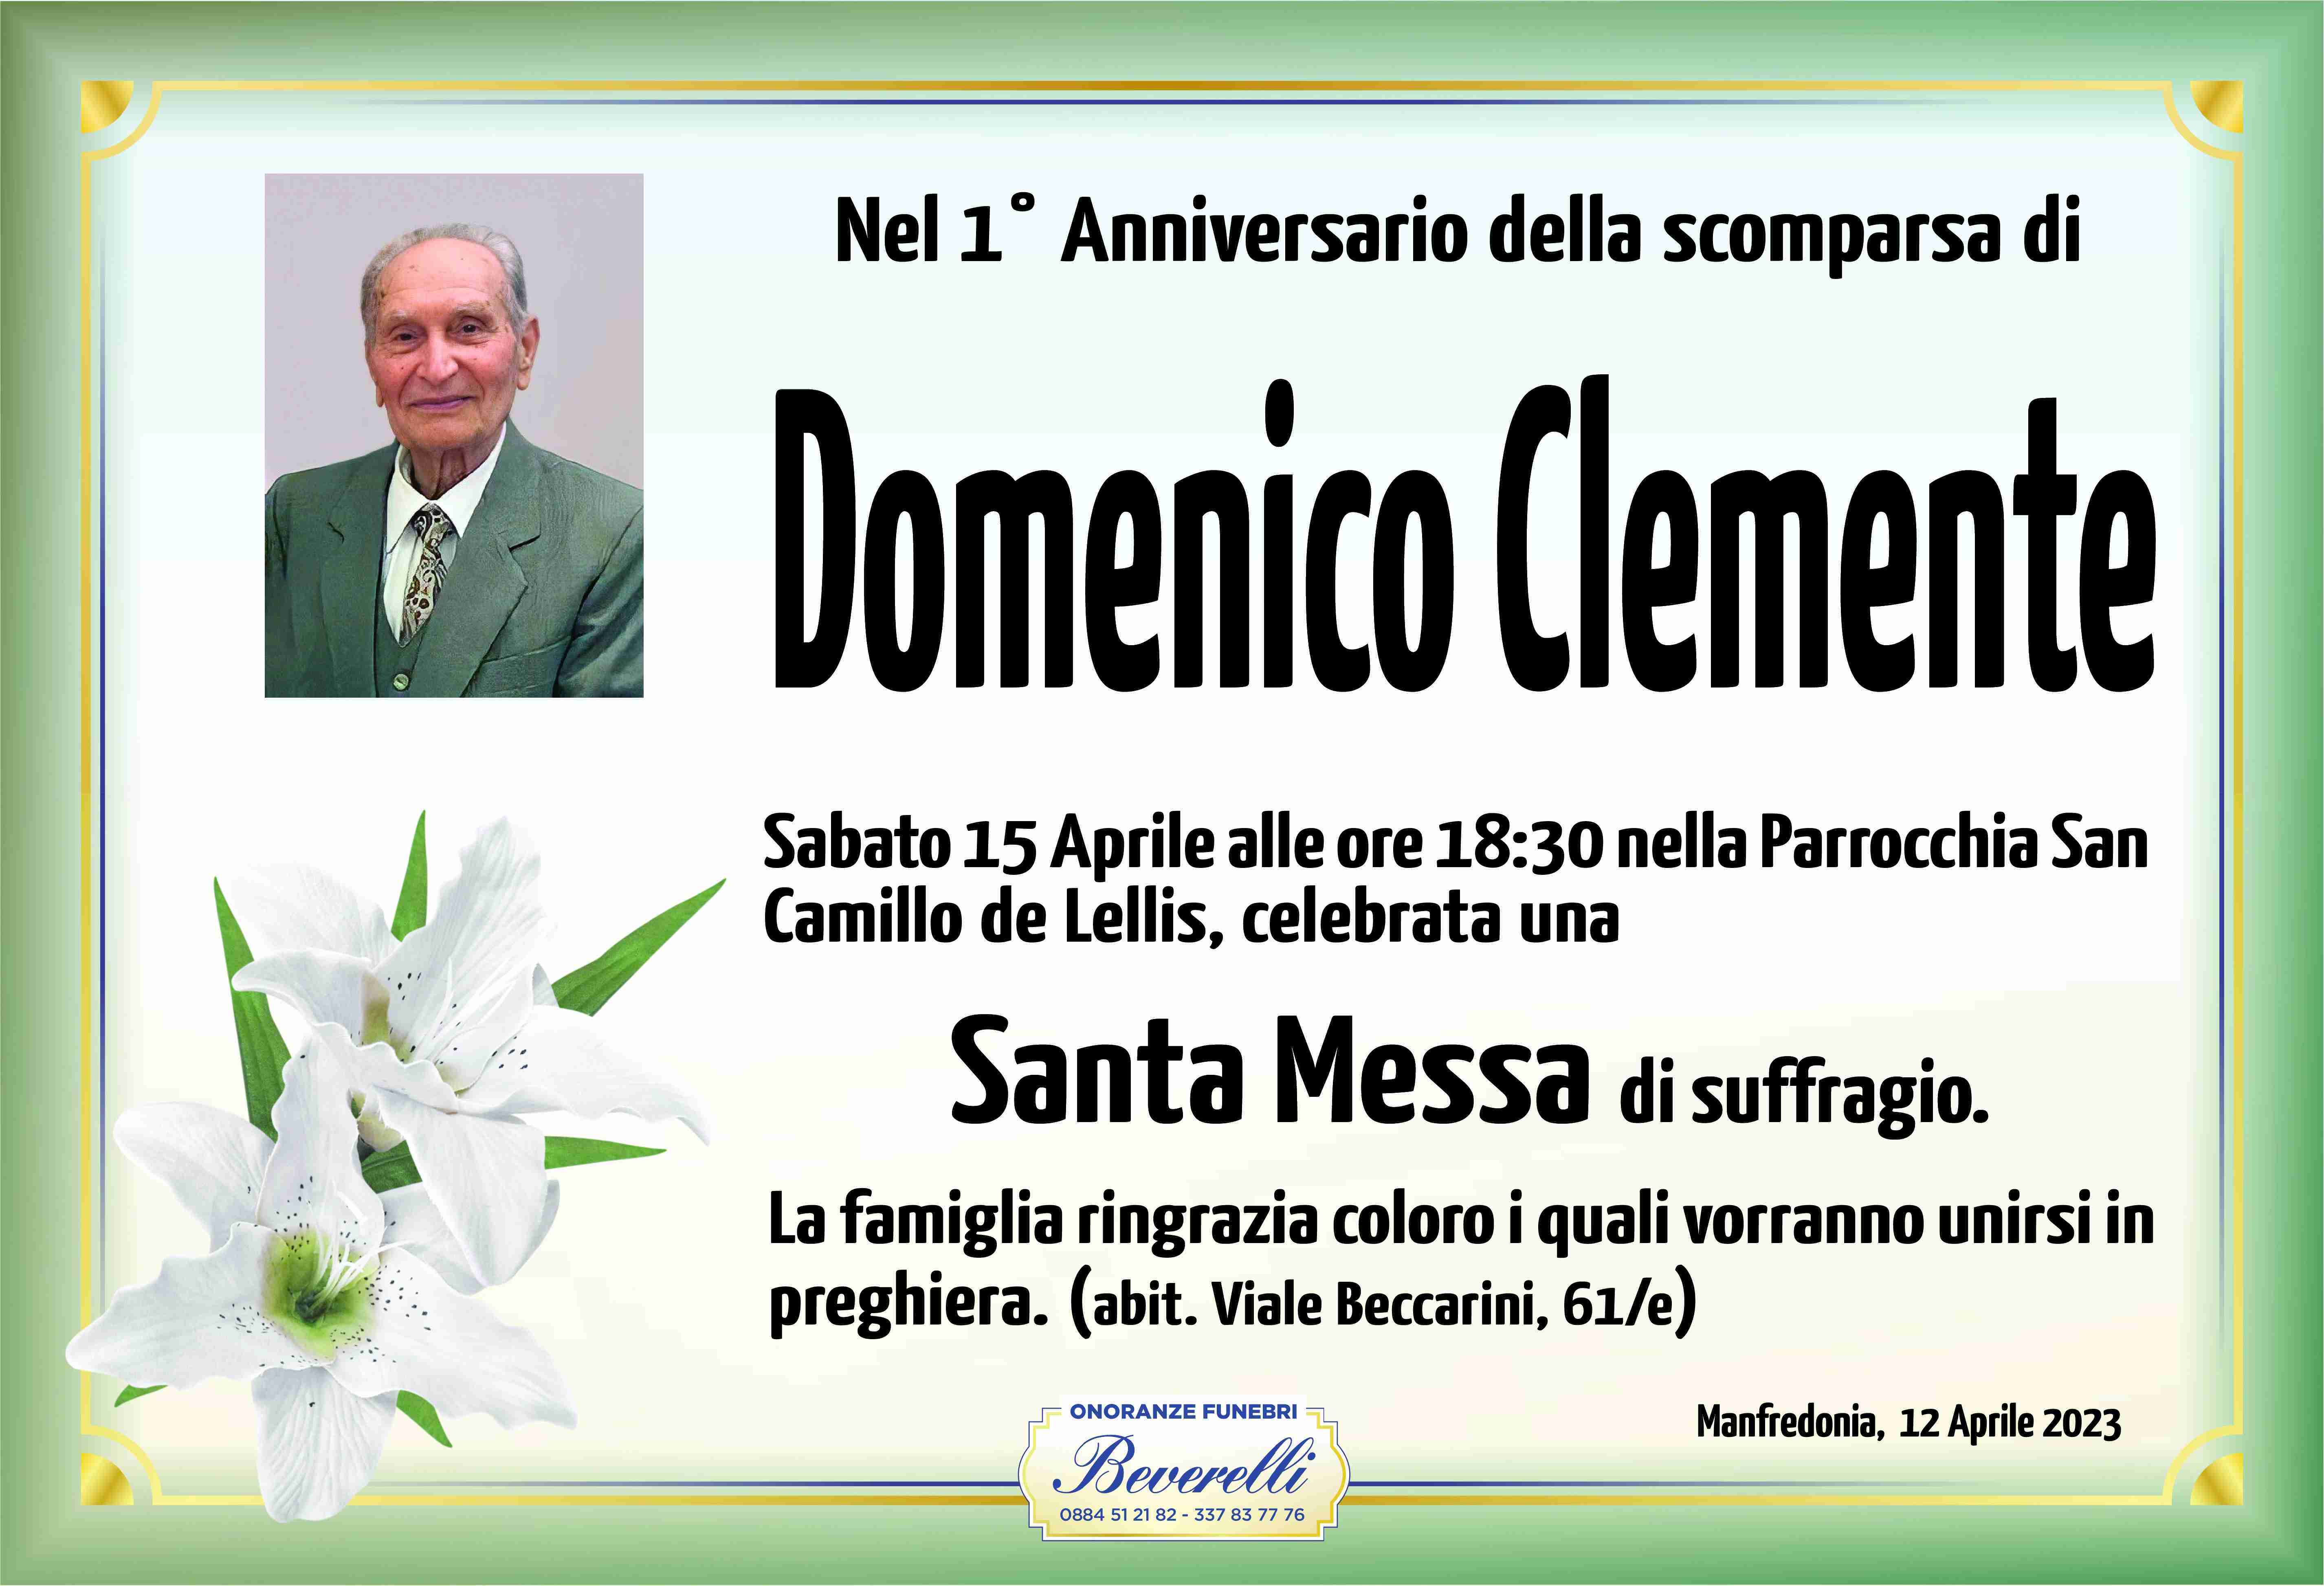 Domenico Clemente